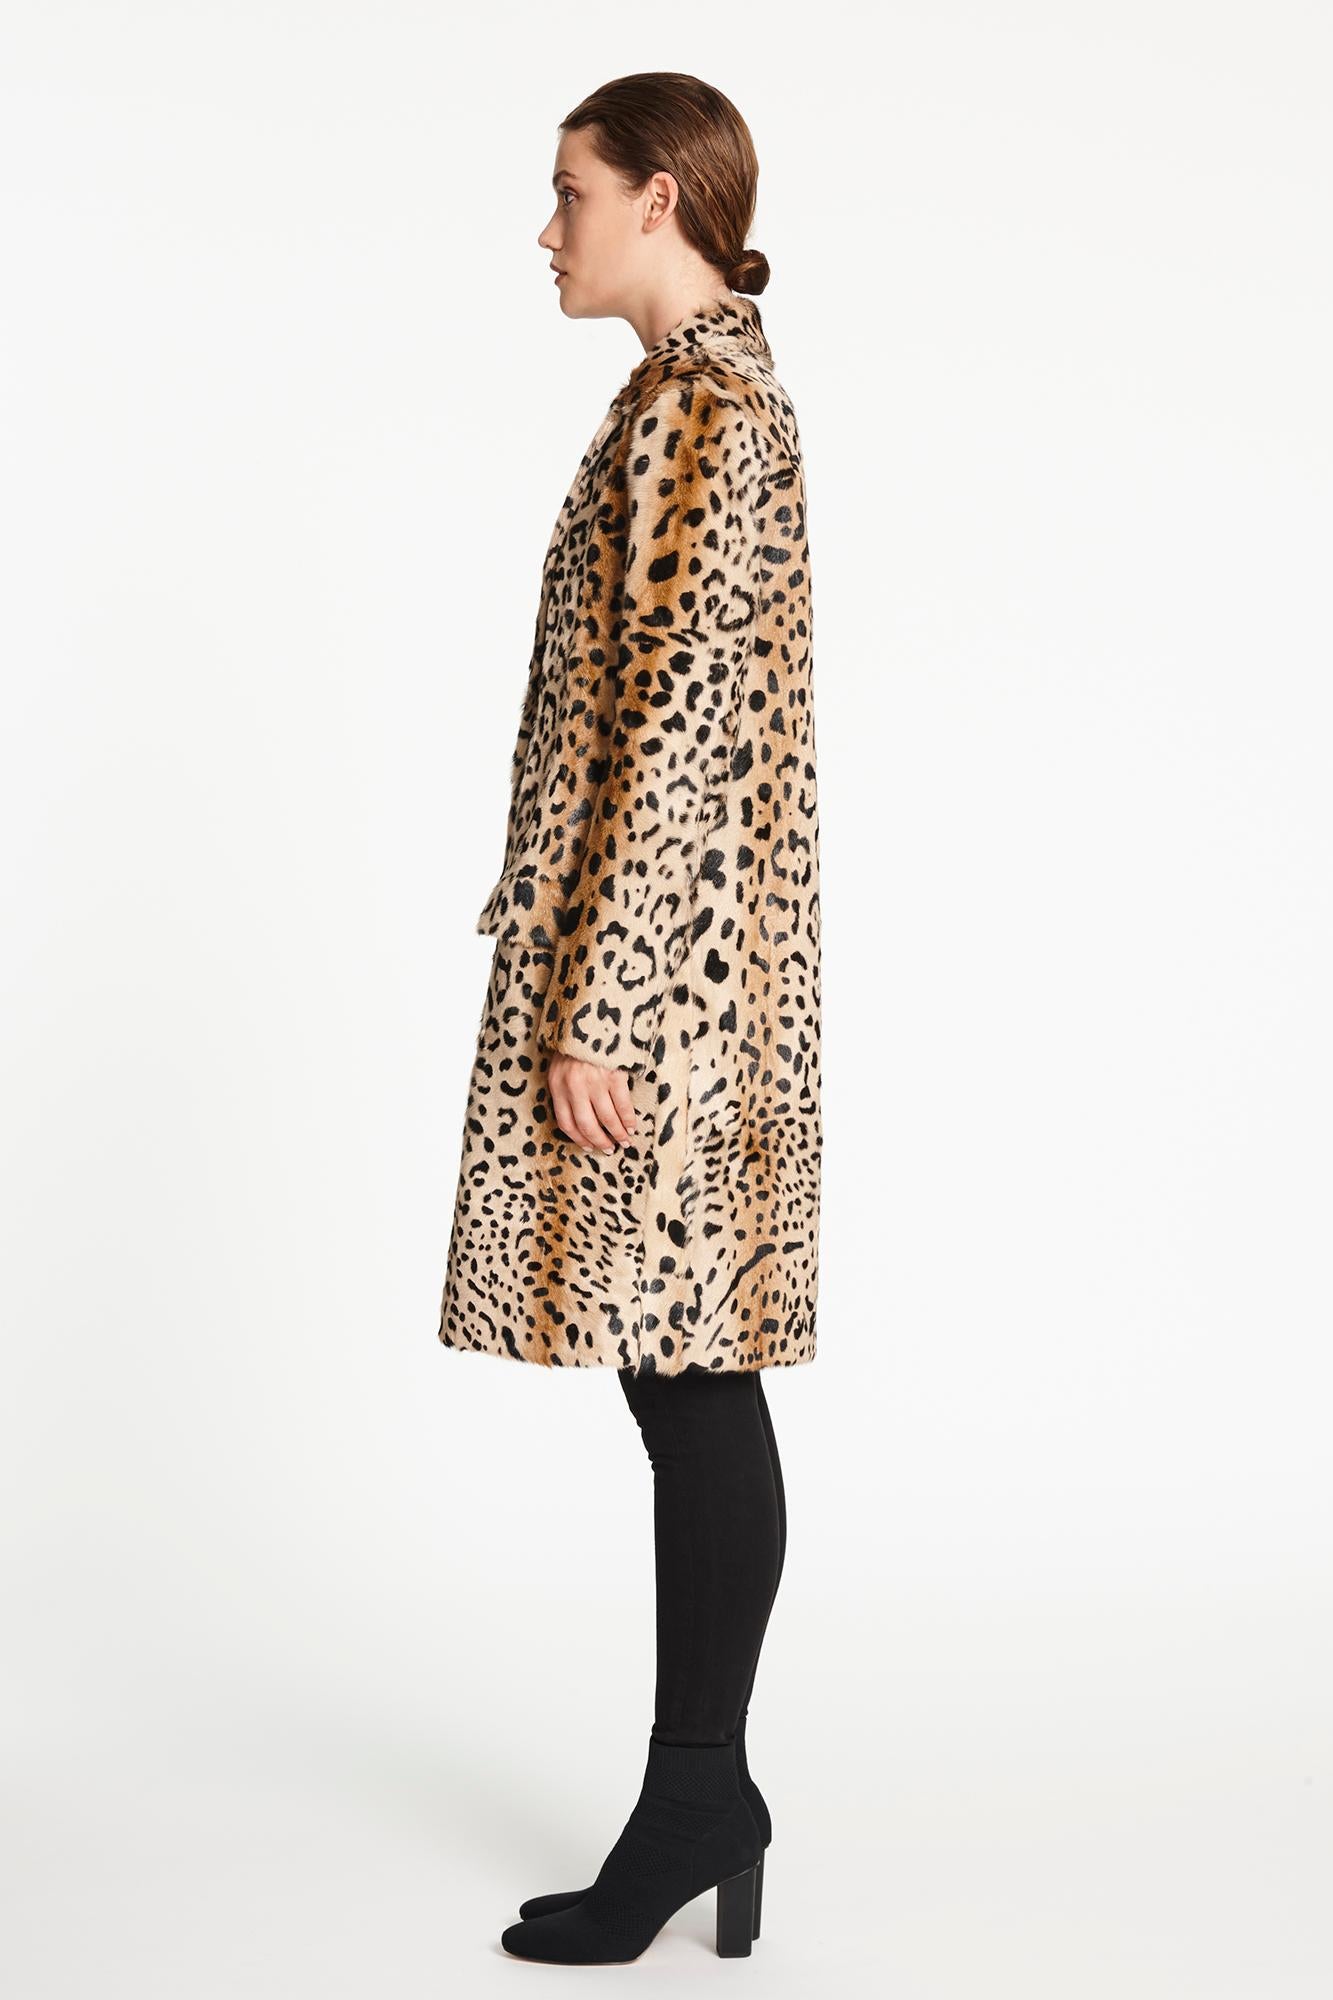 Verheyen London Leopard Print Coat in Natural Goat Hair Fur UK 10  3